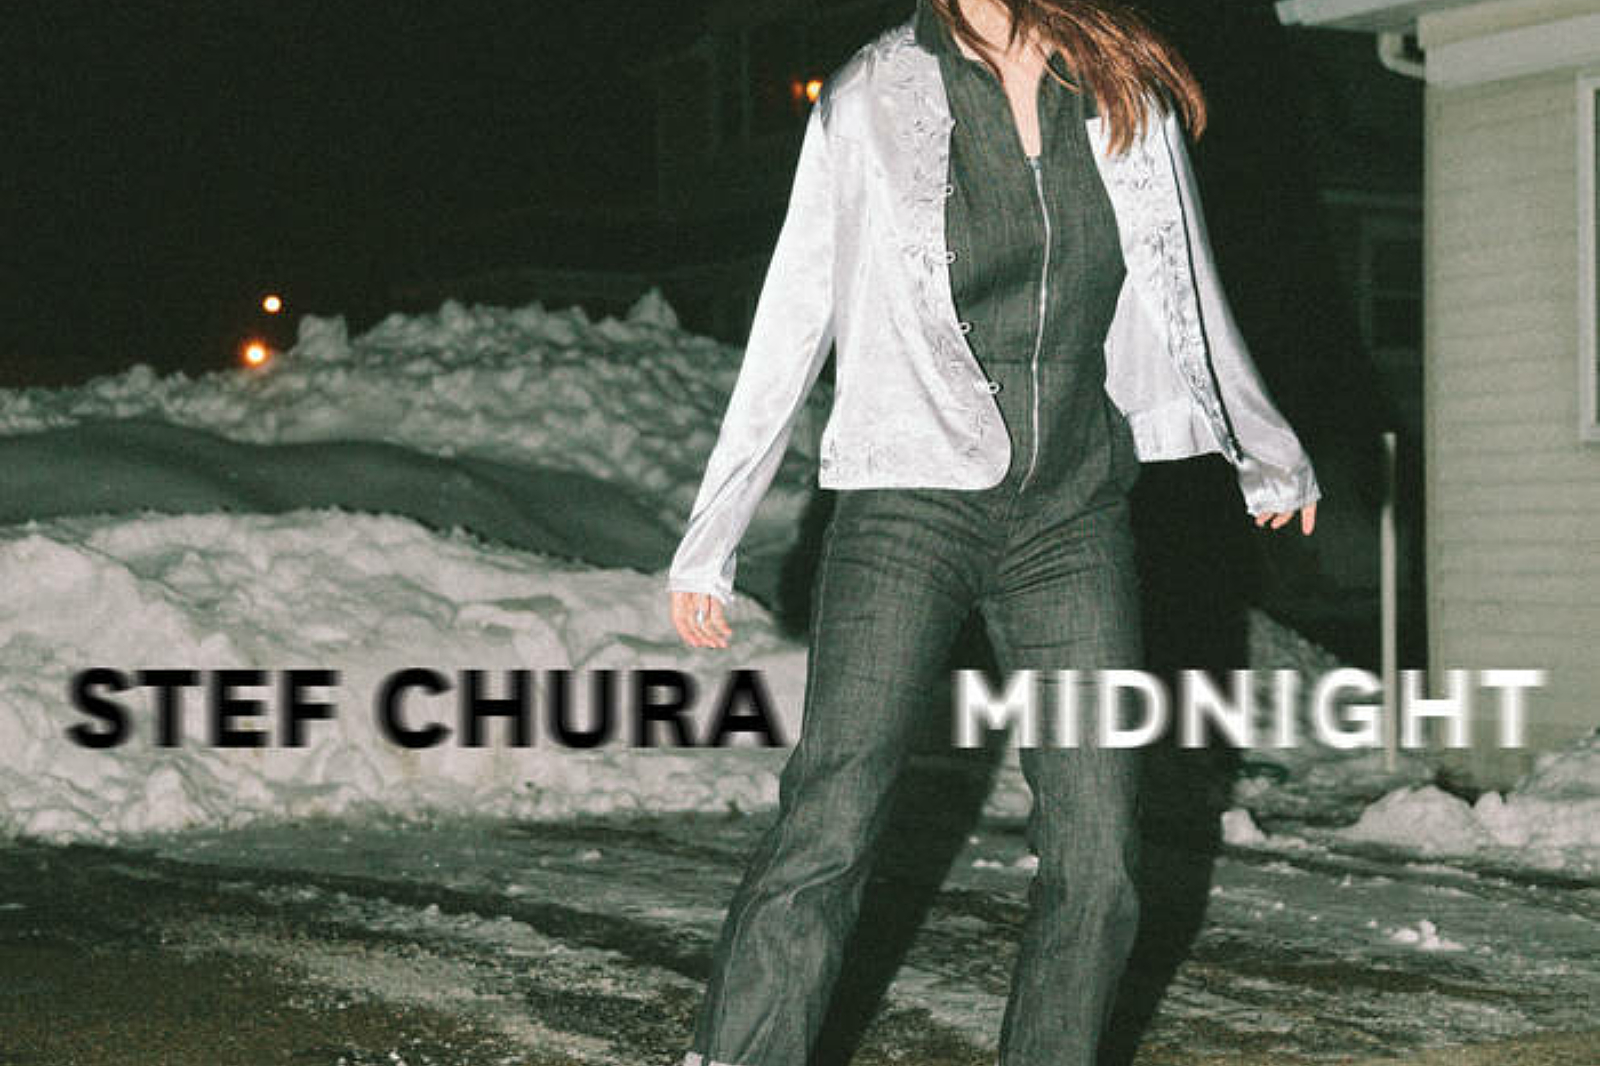 Stef Chura - Midnight